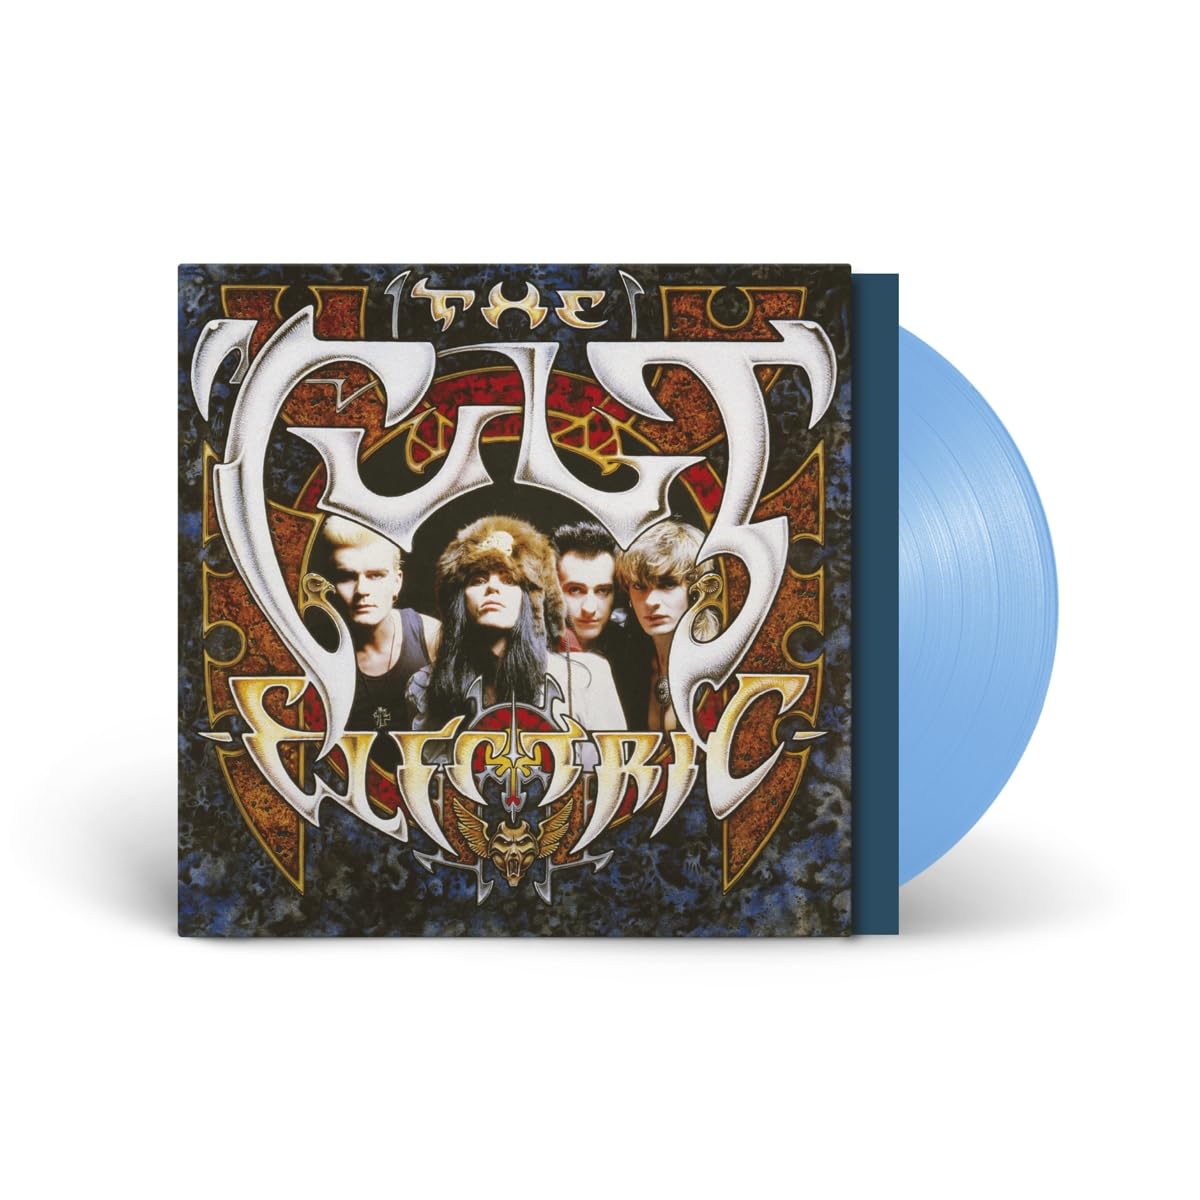 CULT – ELECTRIC blue vinyl LP